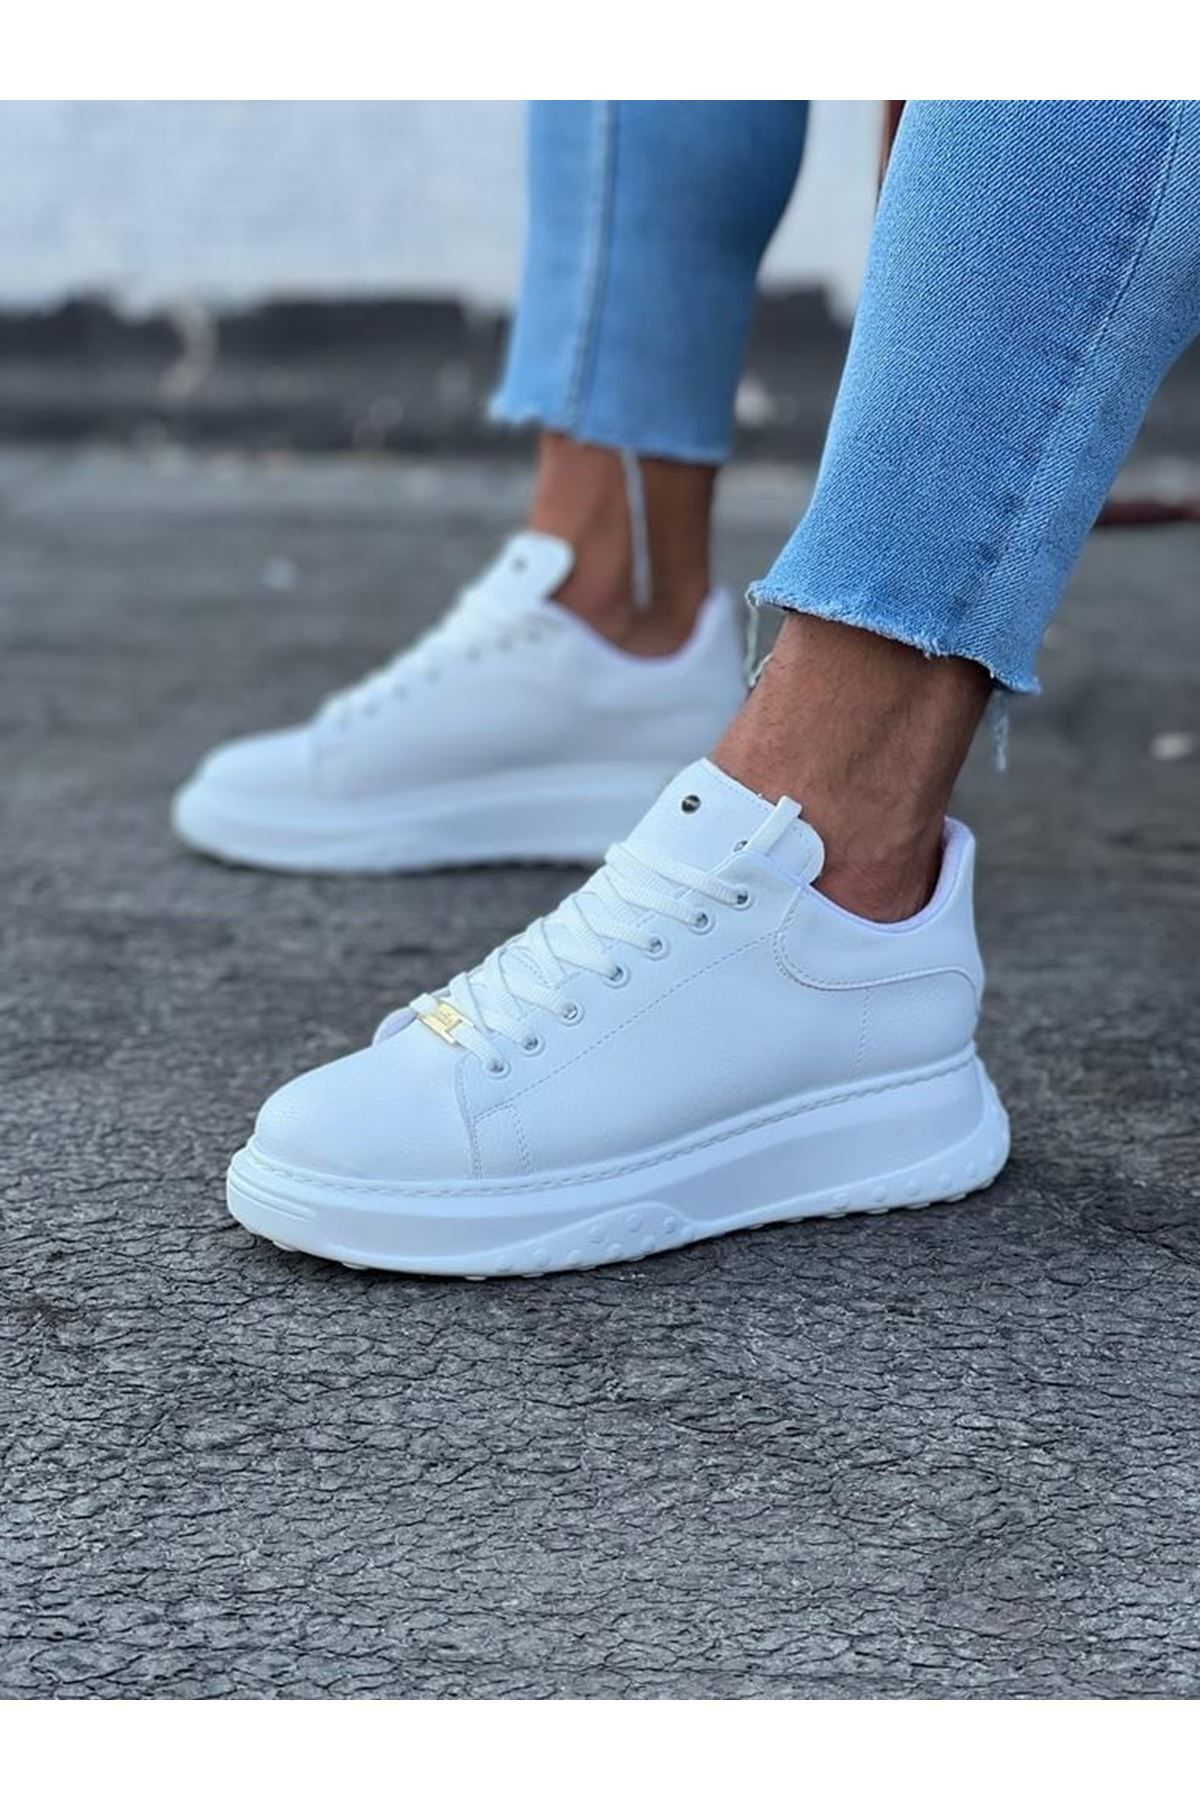 Hera Giyim Wg501 Beyaz Erkek Yüksek Taban Ayakkabı